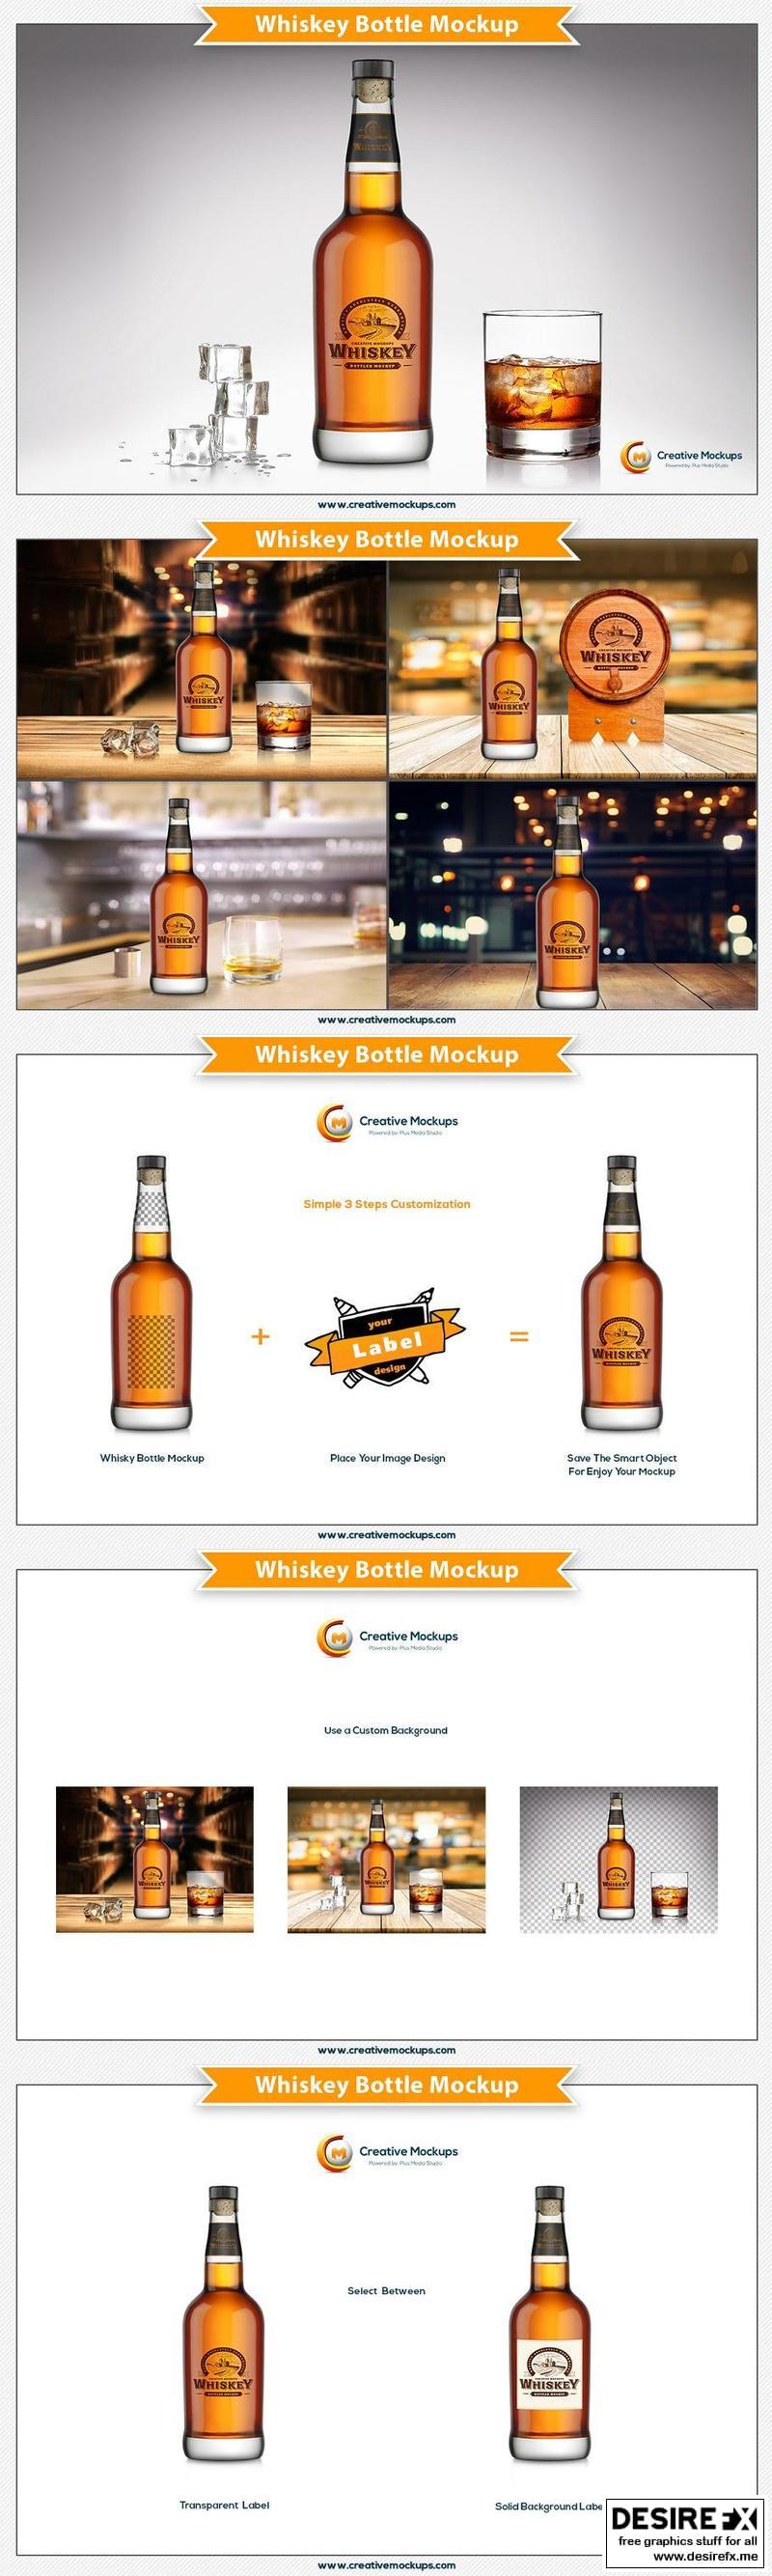 Download Desire Fx 3d Models Cm Whiskey Bottle Mockup 2518375